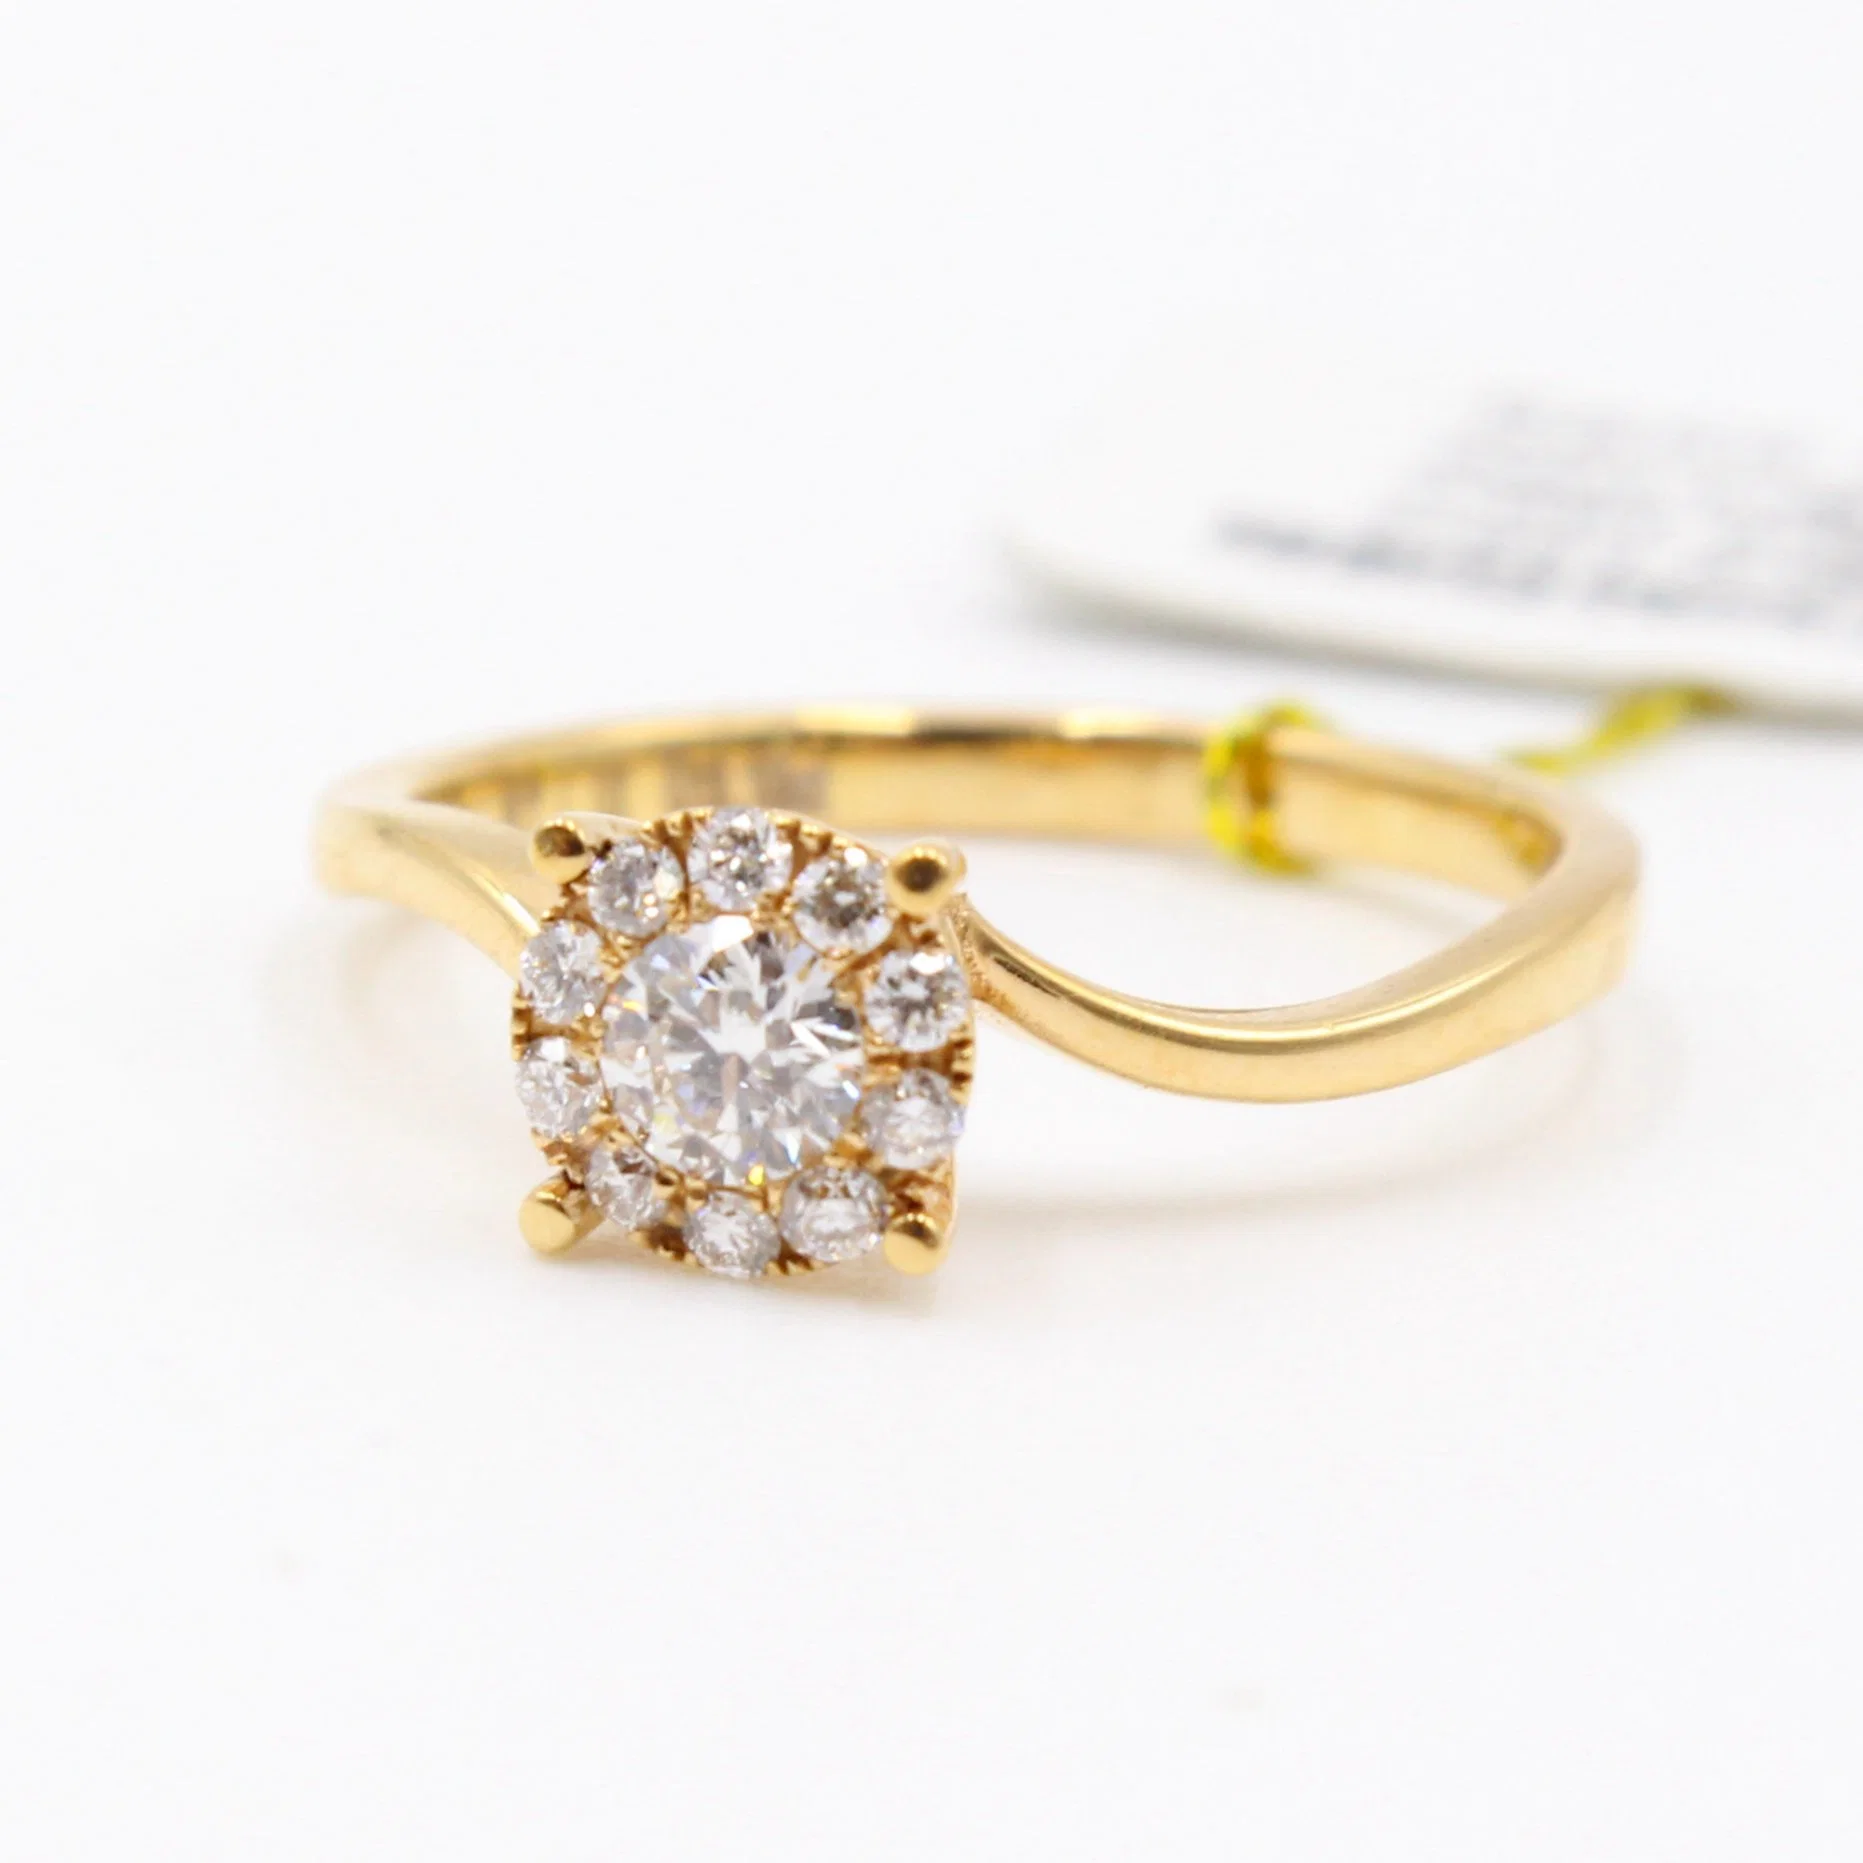 Bijoux de haute qualité pour femmes, bagues de mariage en or jaune 14K 18K avec diamants en moissanite.